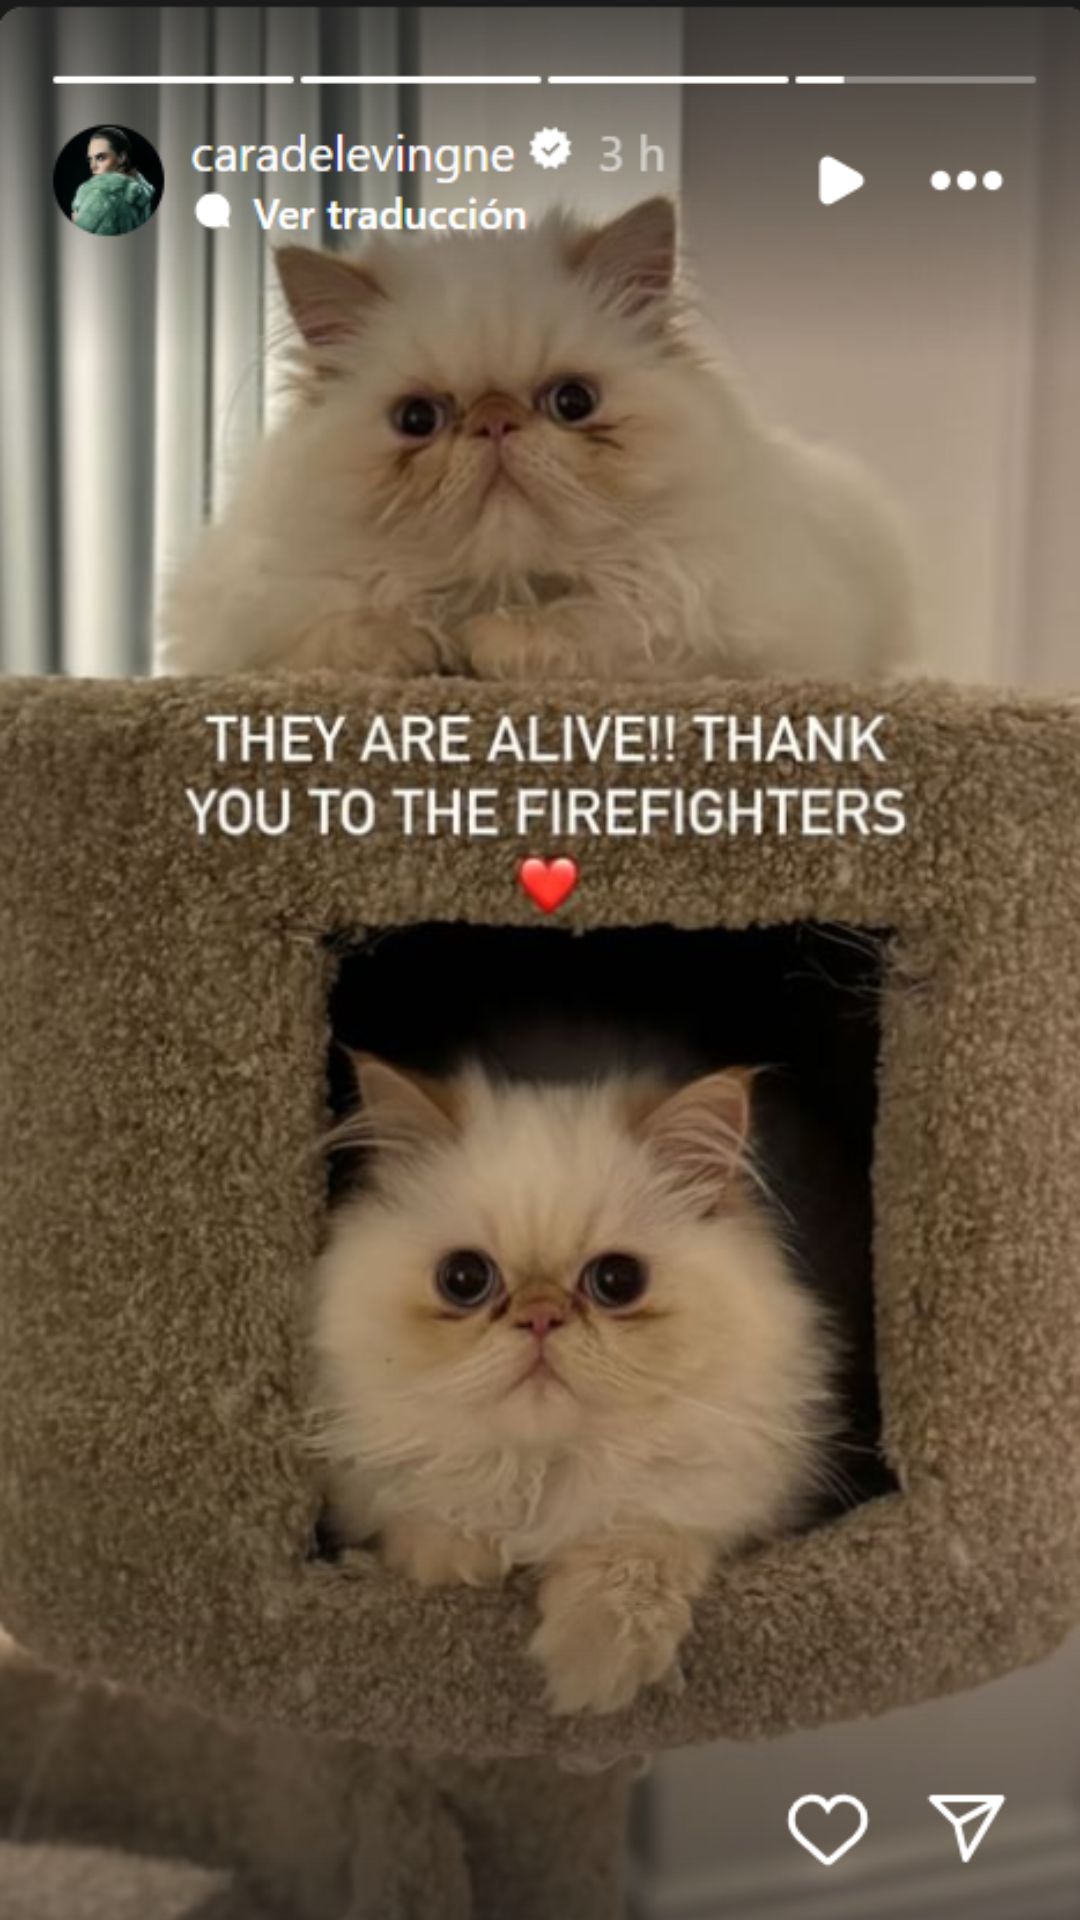 Gatos de Cara Delevingne fueron rescatados del incendio en su mansión en Los Ángeles, informó la actriz en Instagram.